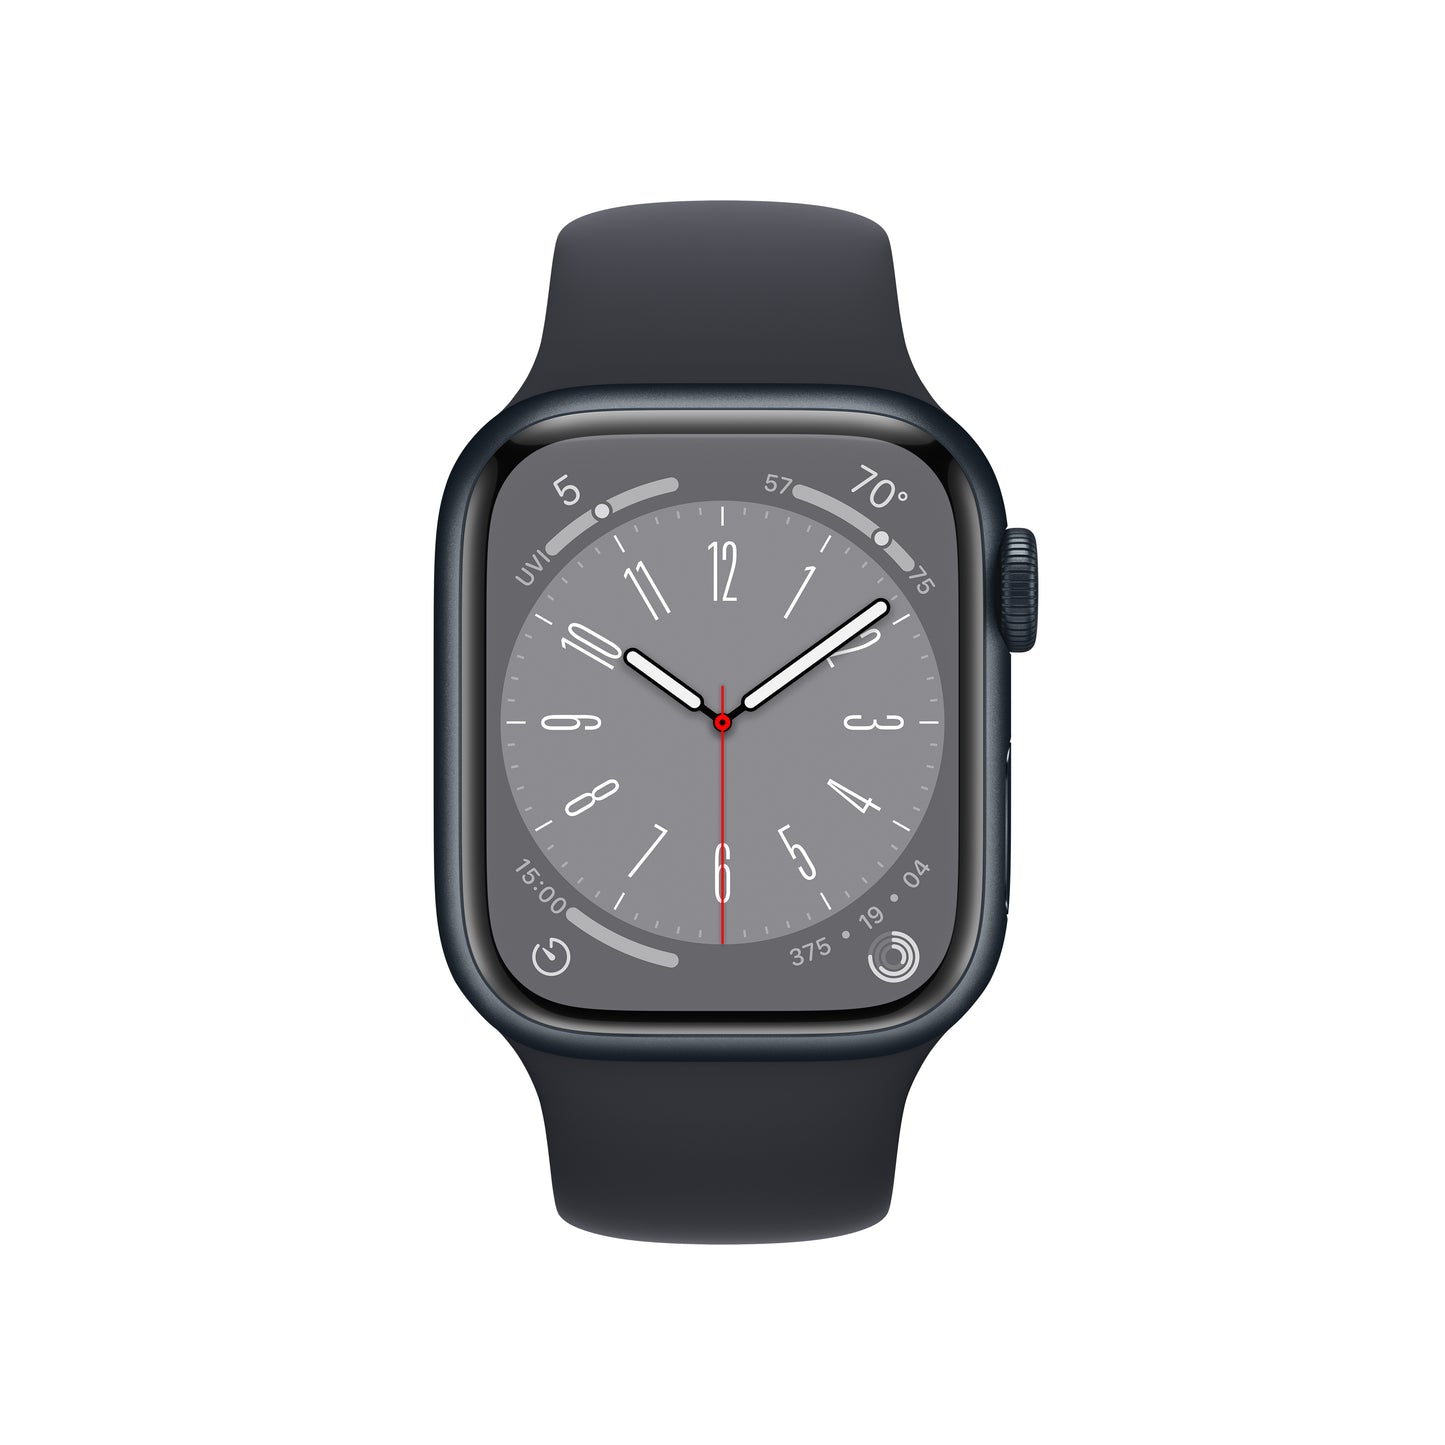 Apple Watch Series 8 pantalla siempre activa con diseño de borde a borde en www.mac-center.com